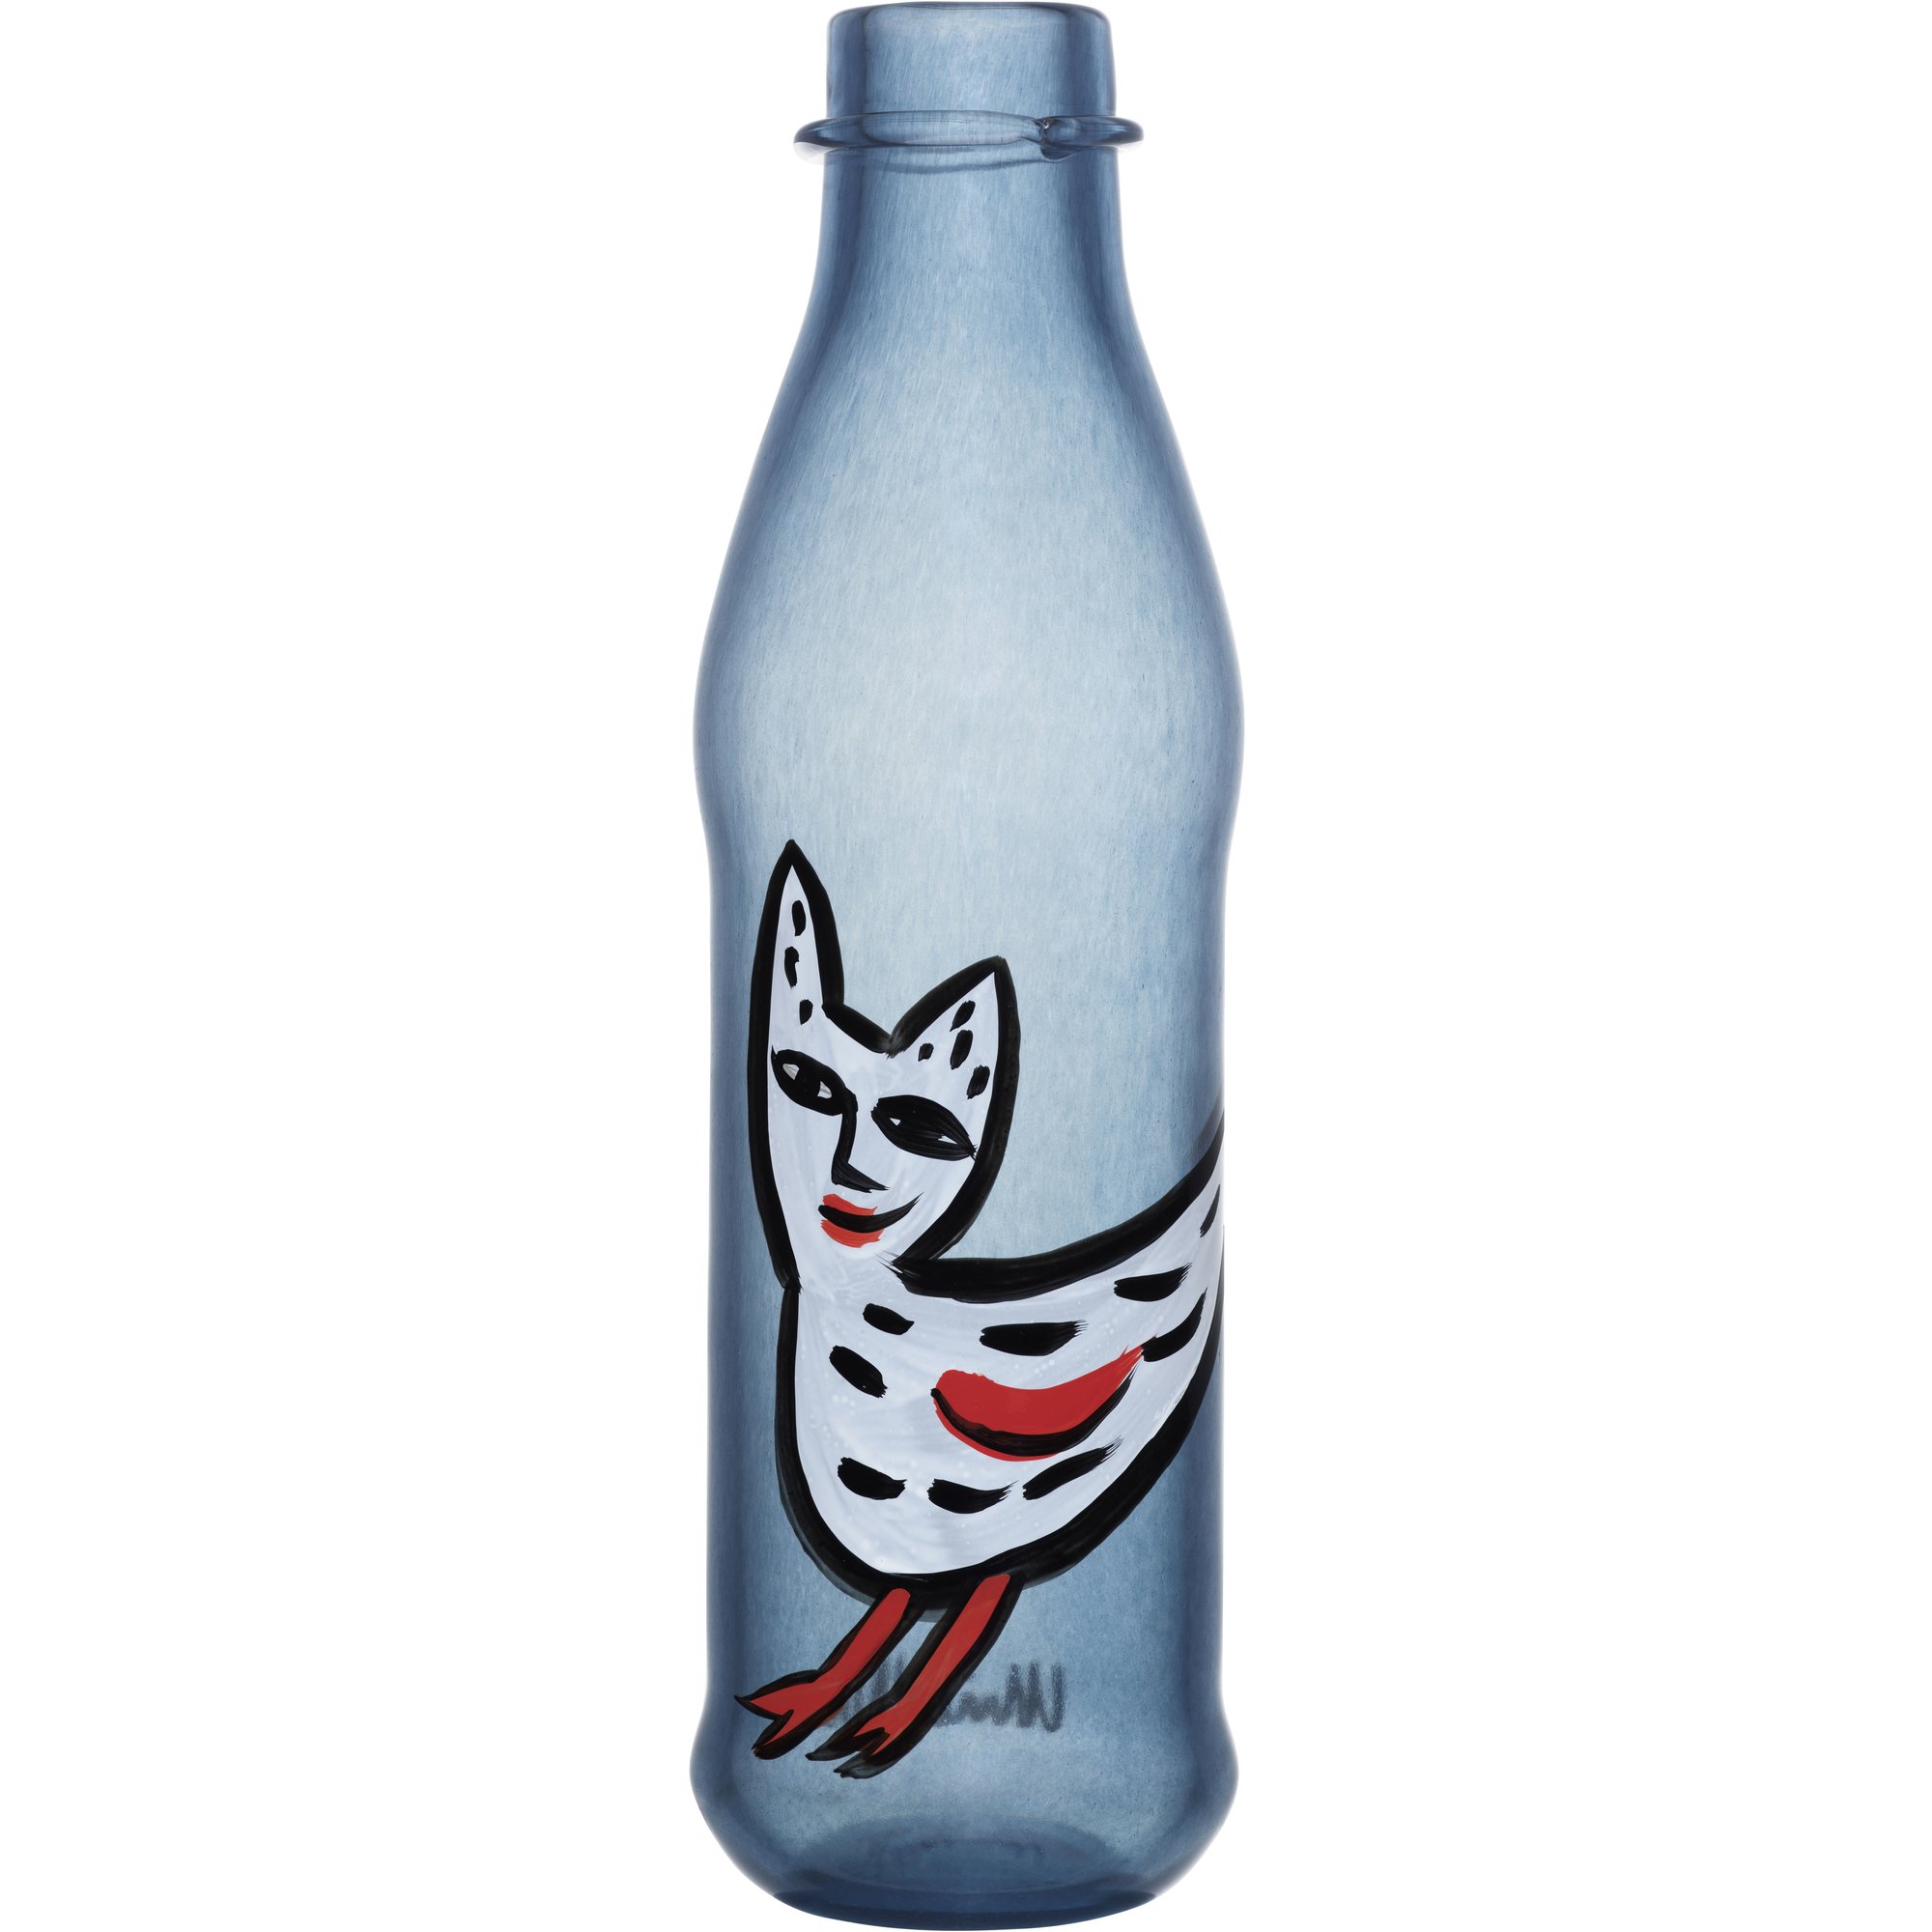 Kosta Boda Hyllestkolleksjon Ulrica Hydman PET-flaske, Stålblå Flaske